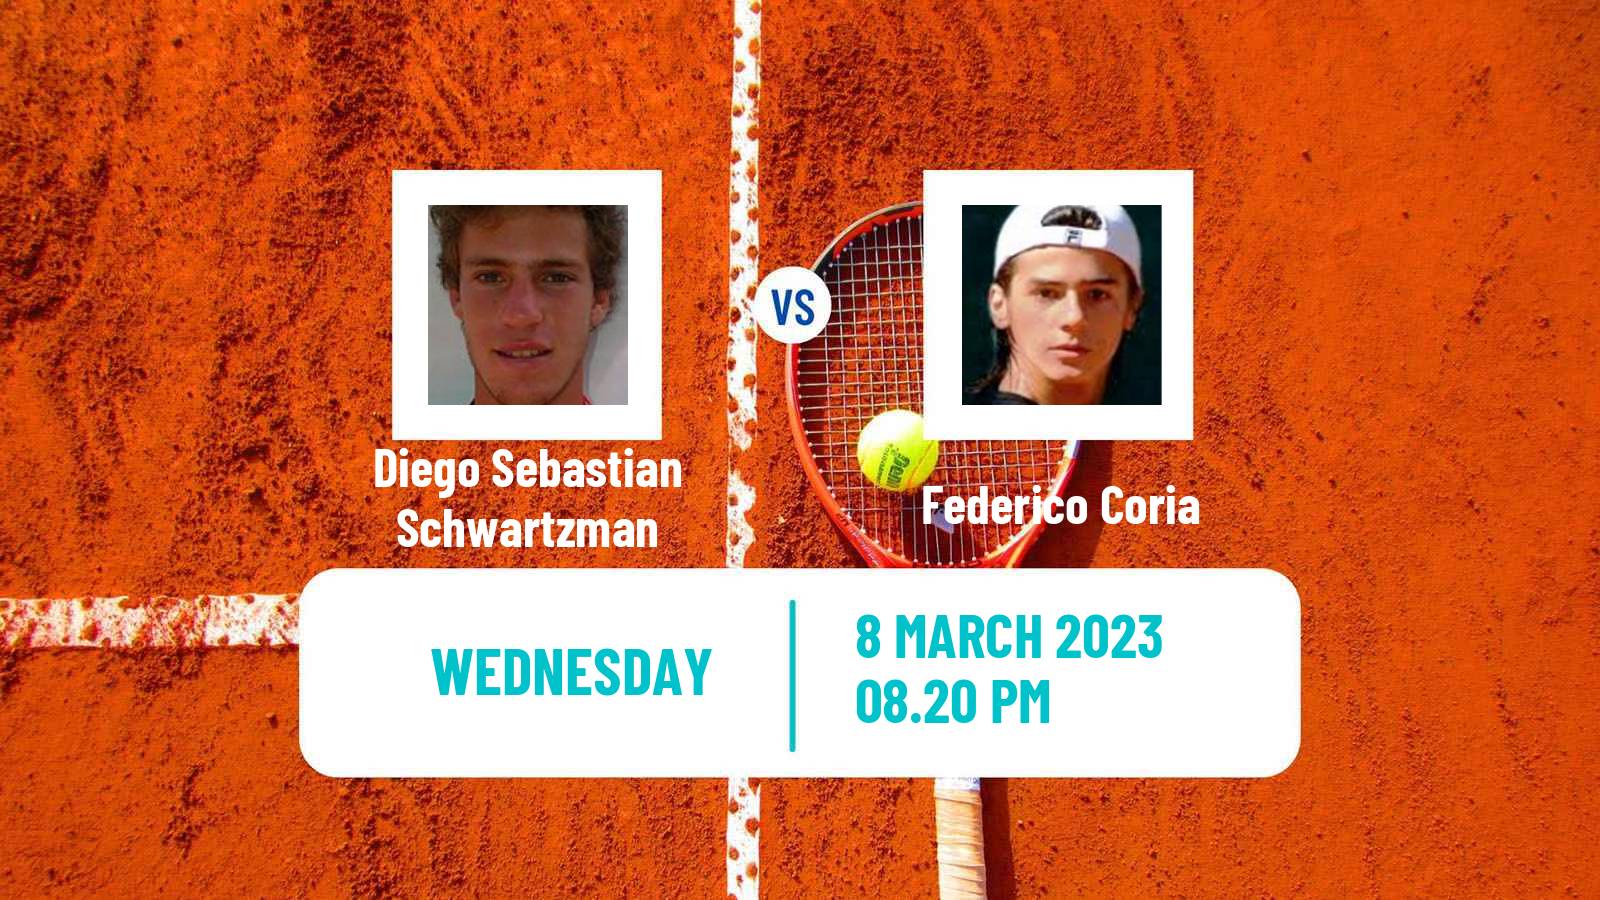 Tennis ATP Indian Wells Diego Sebastian Schwartzman - Federico Coria